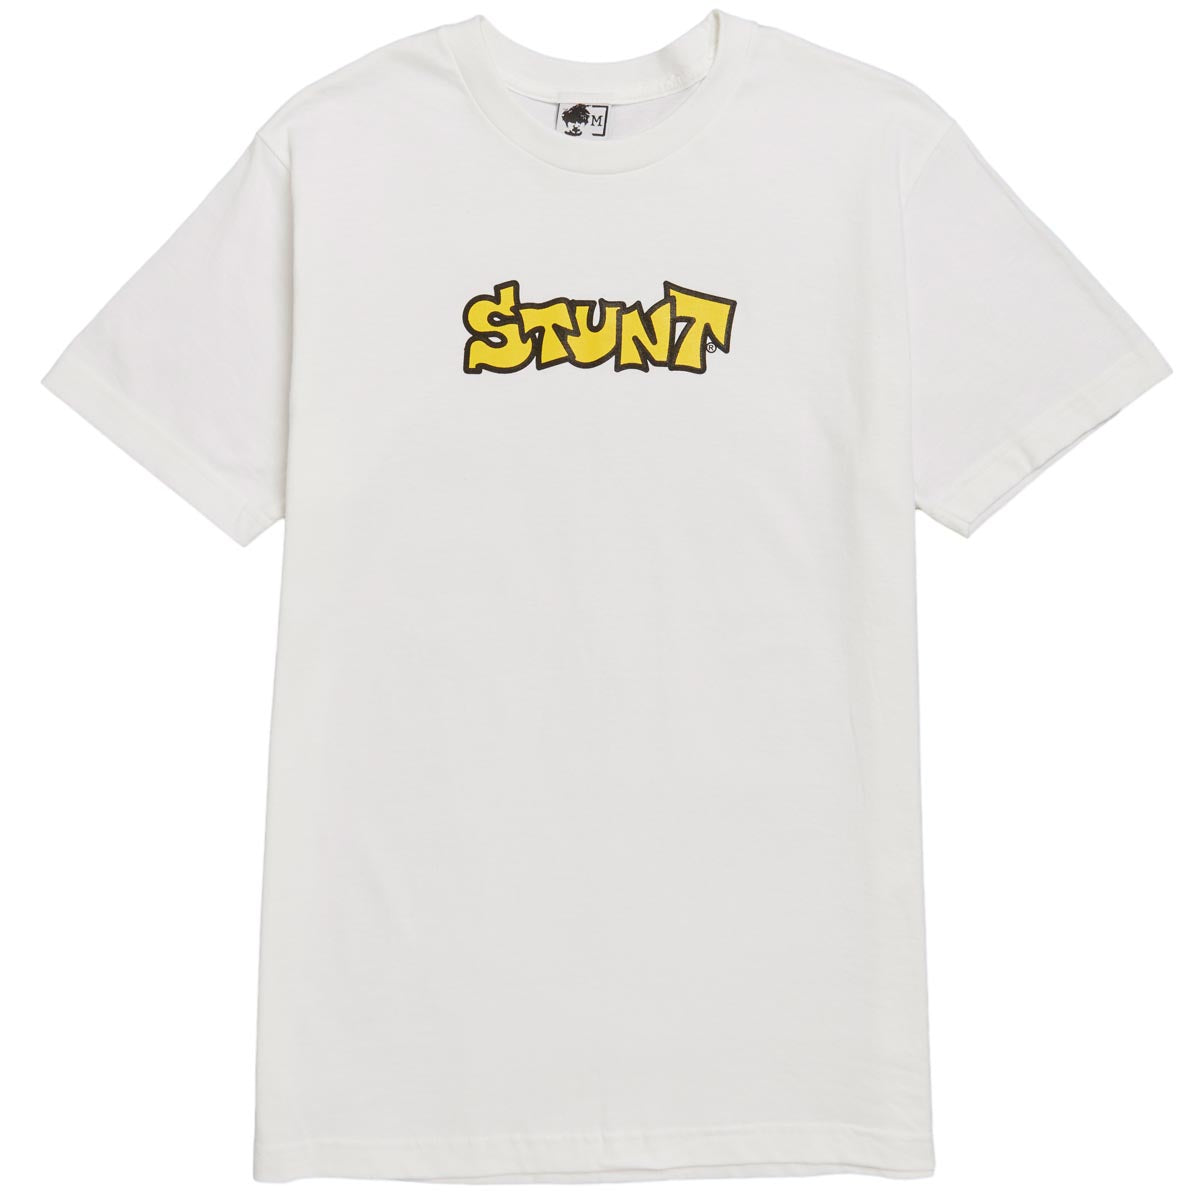 Stunt OG Stunt T-Shirt - White image 1